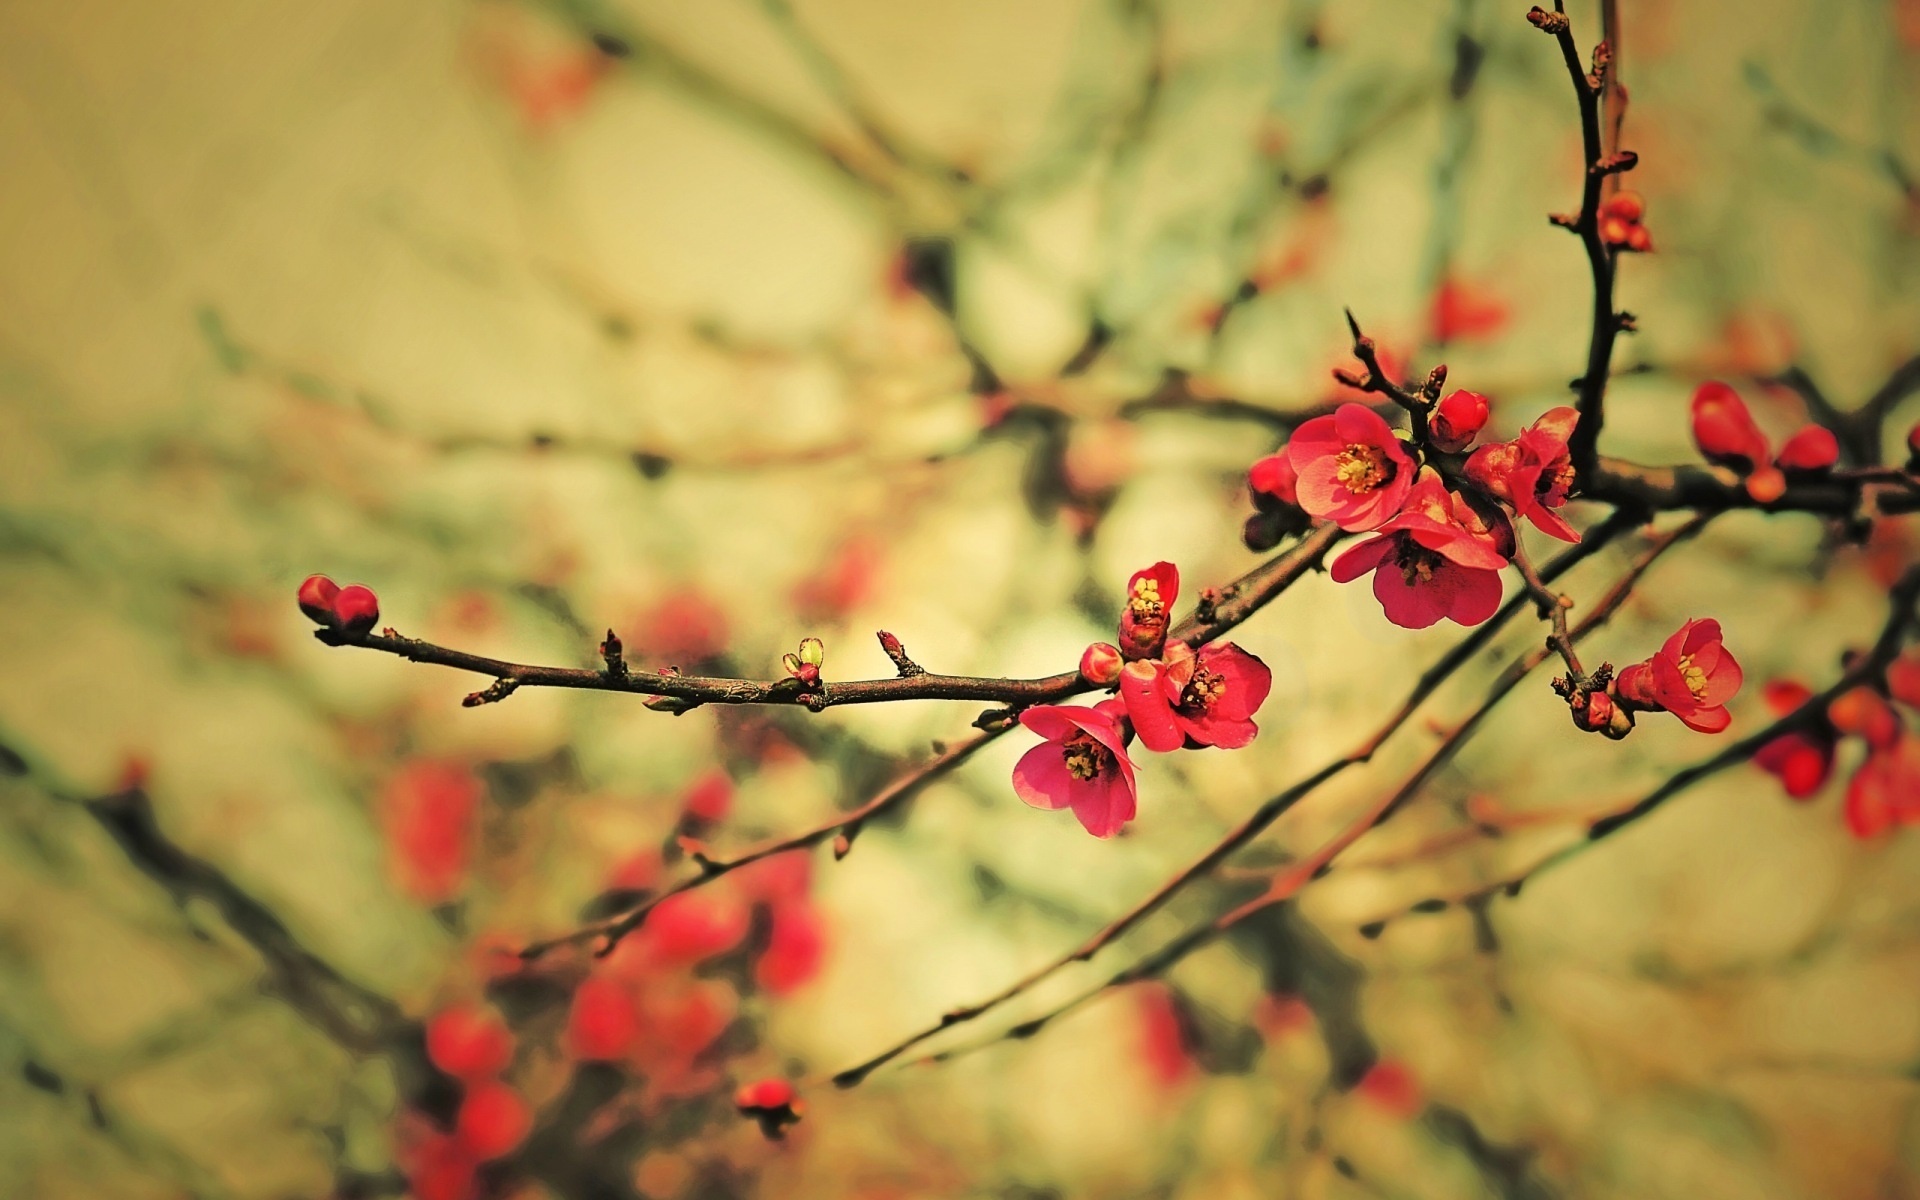 Chia sẻ 999+ spring wallpaper hình nền mùa xuân đẹp nhất | Hình nền đẹp icapi